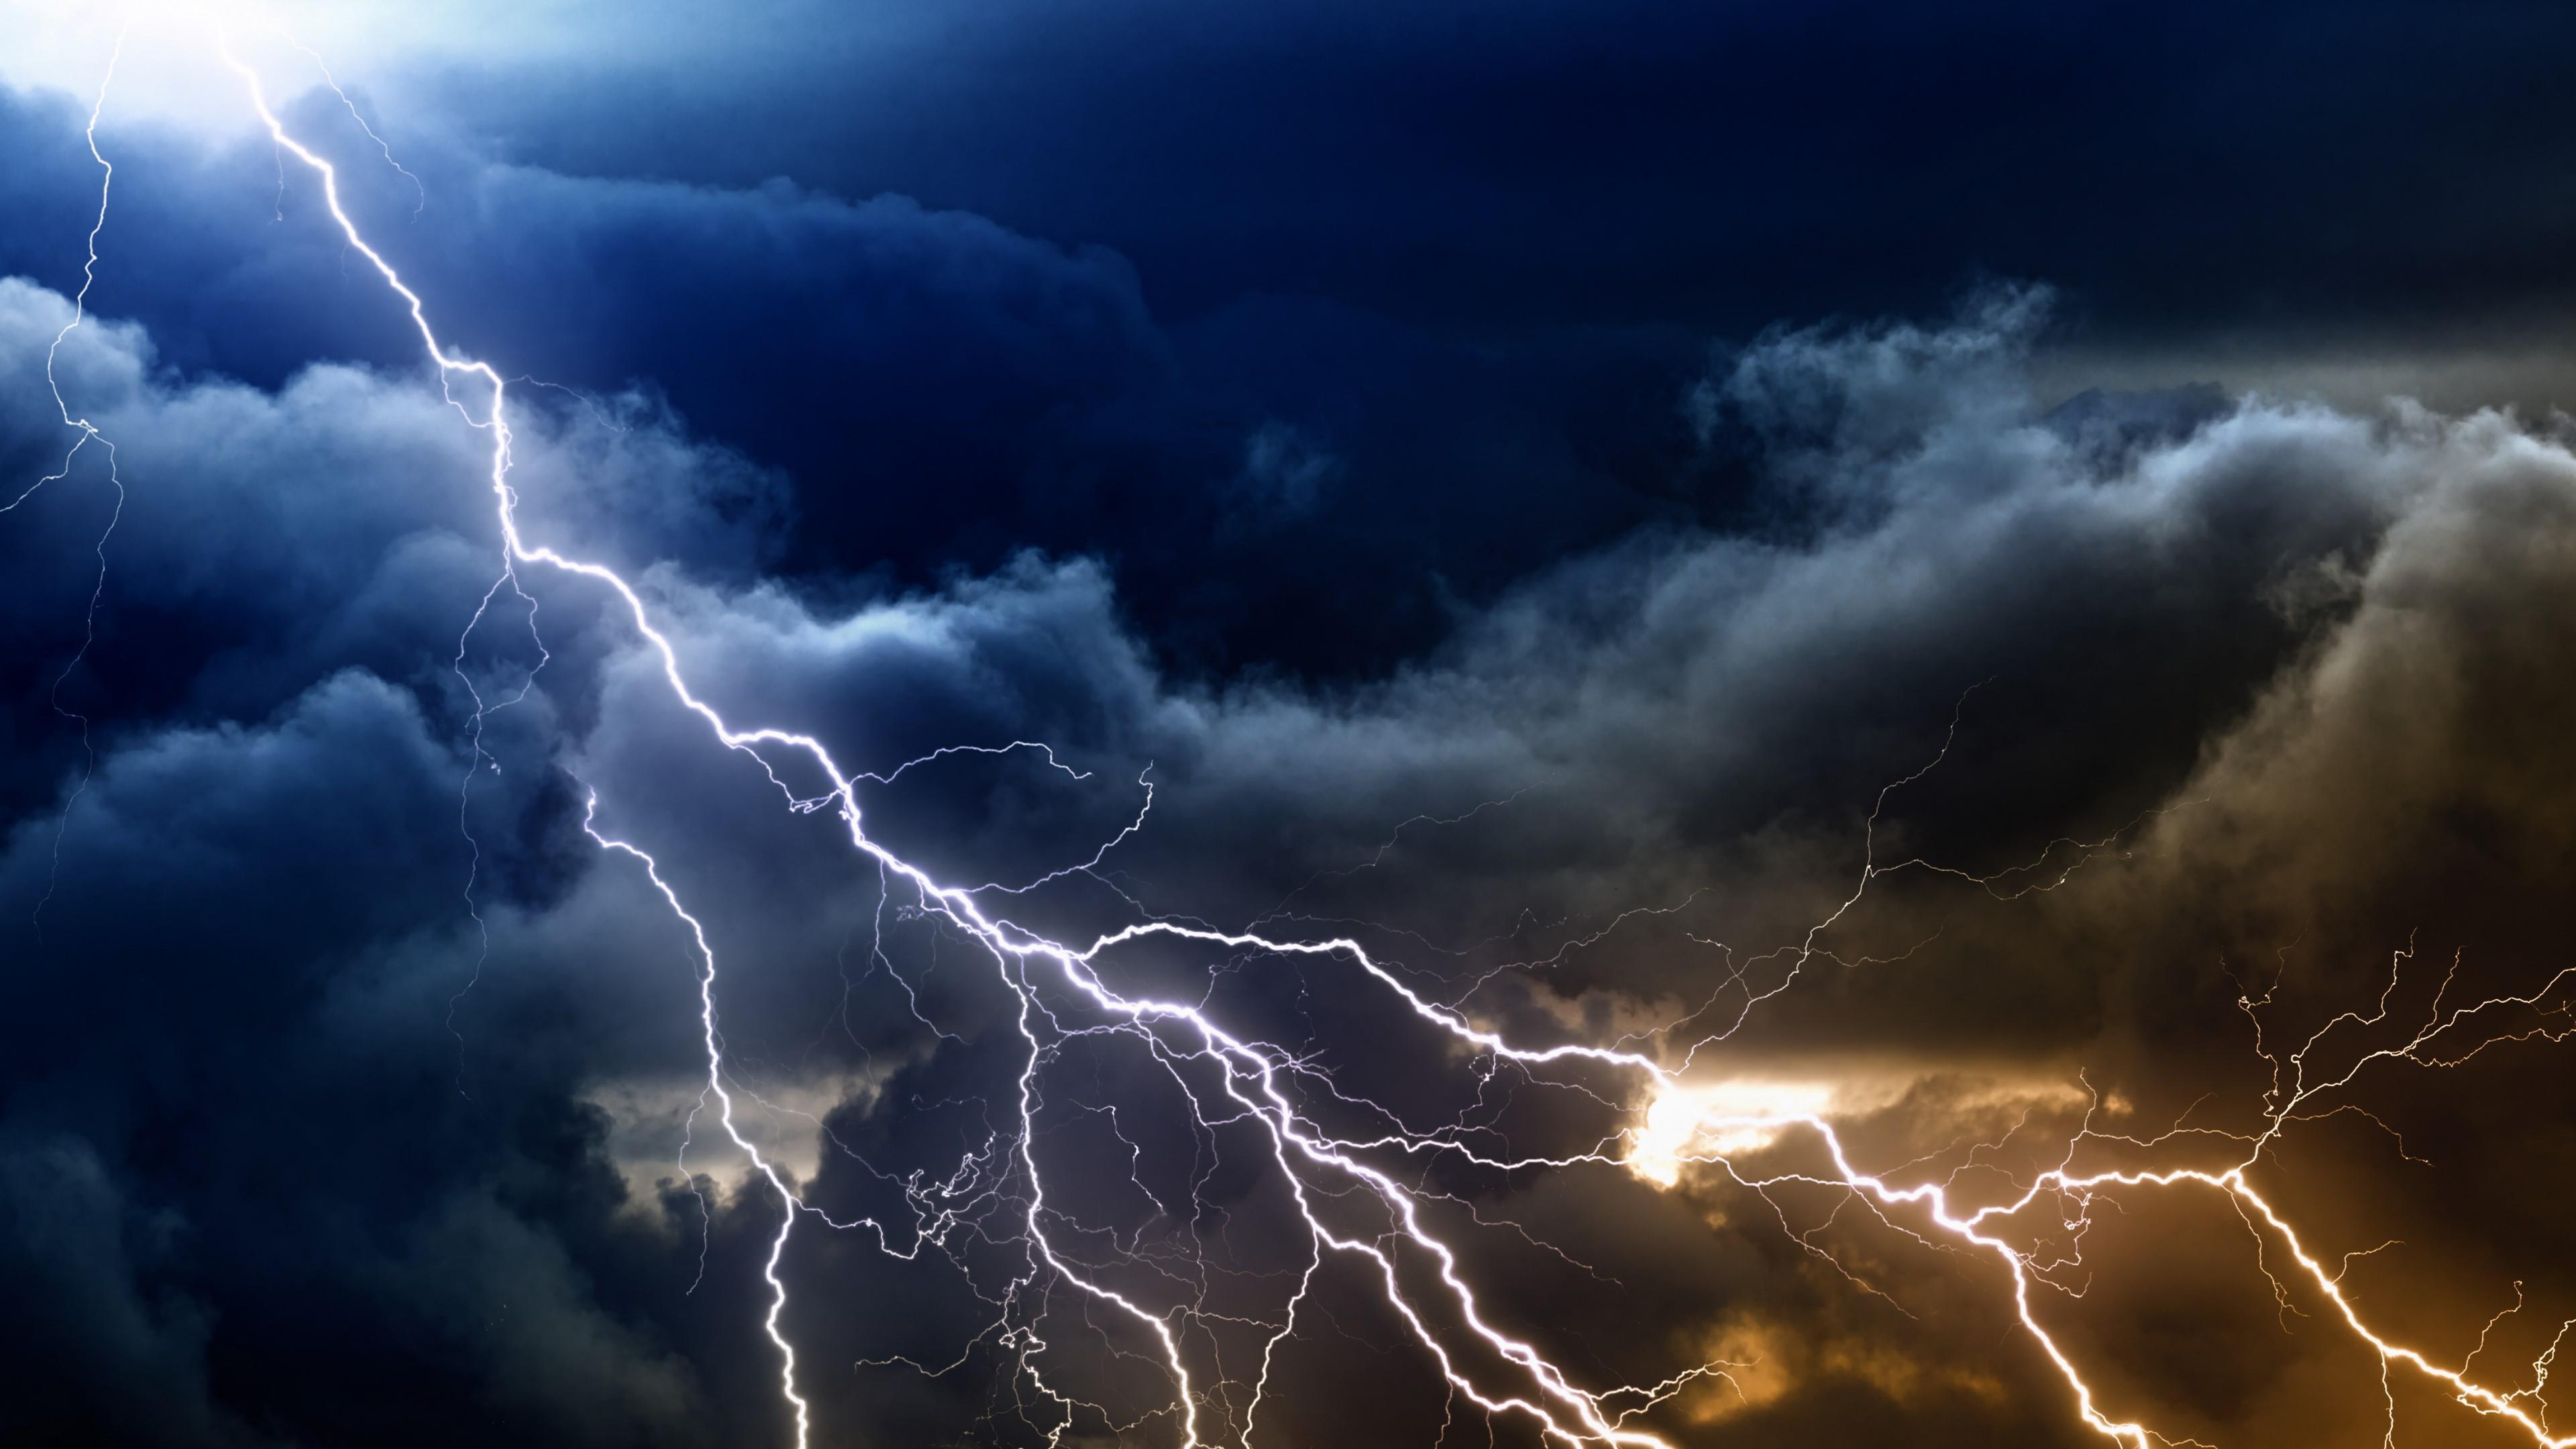 HD wallpaper: lightning, night, night sky, power in nature